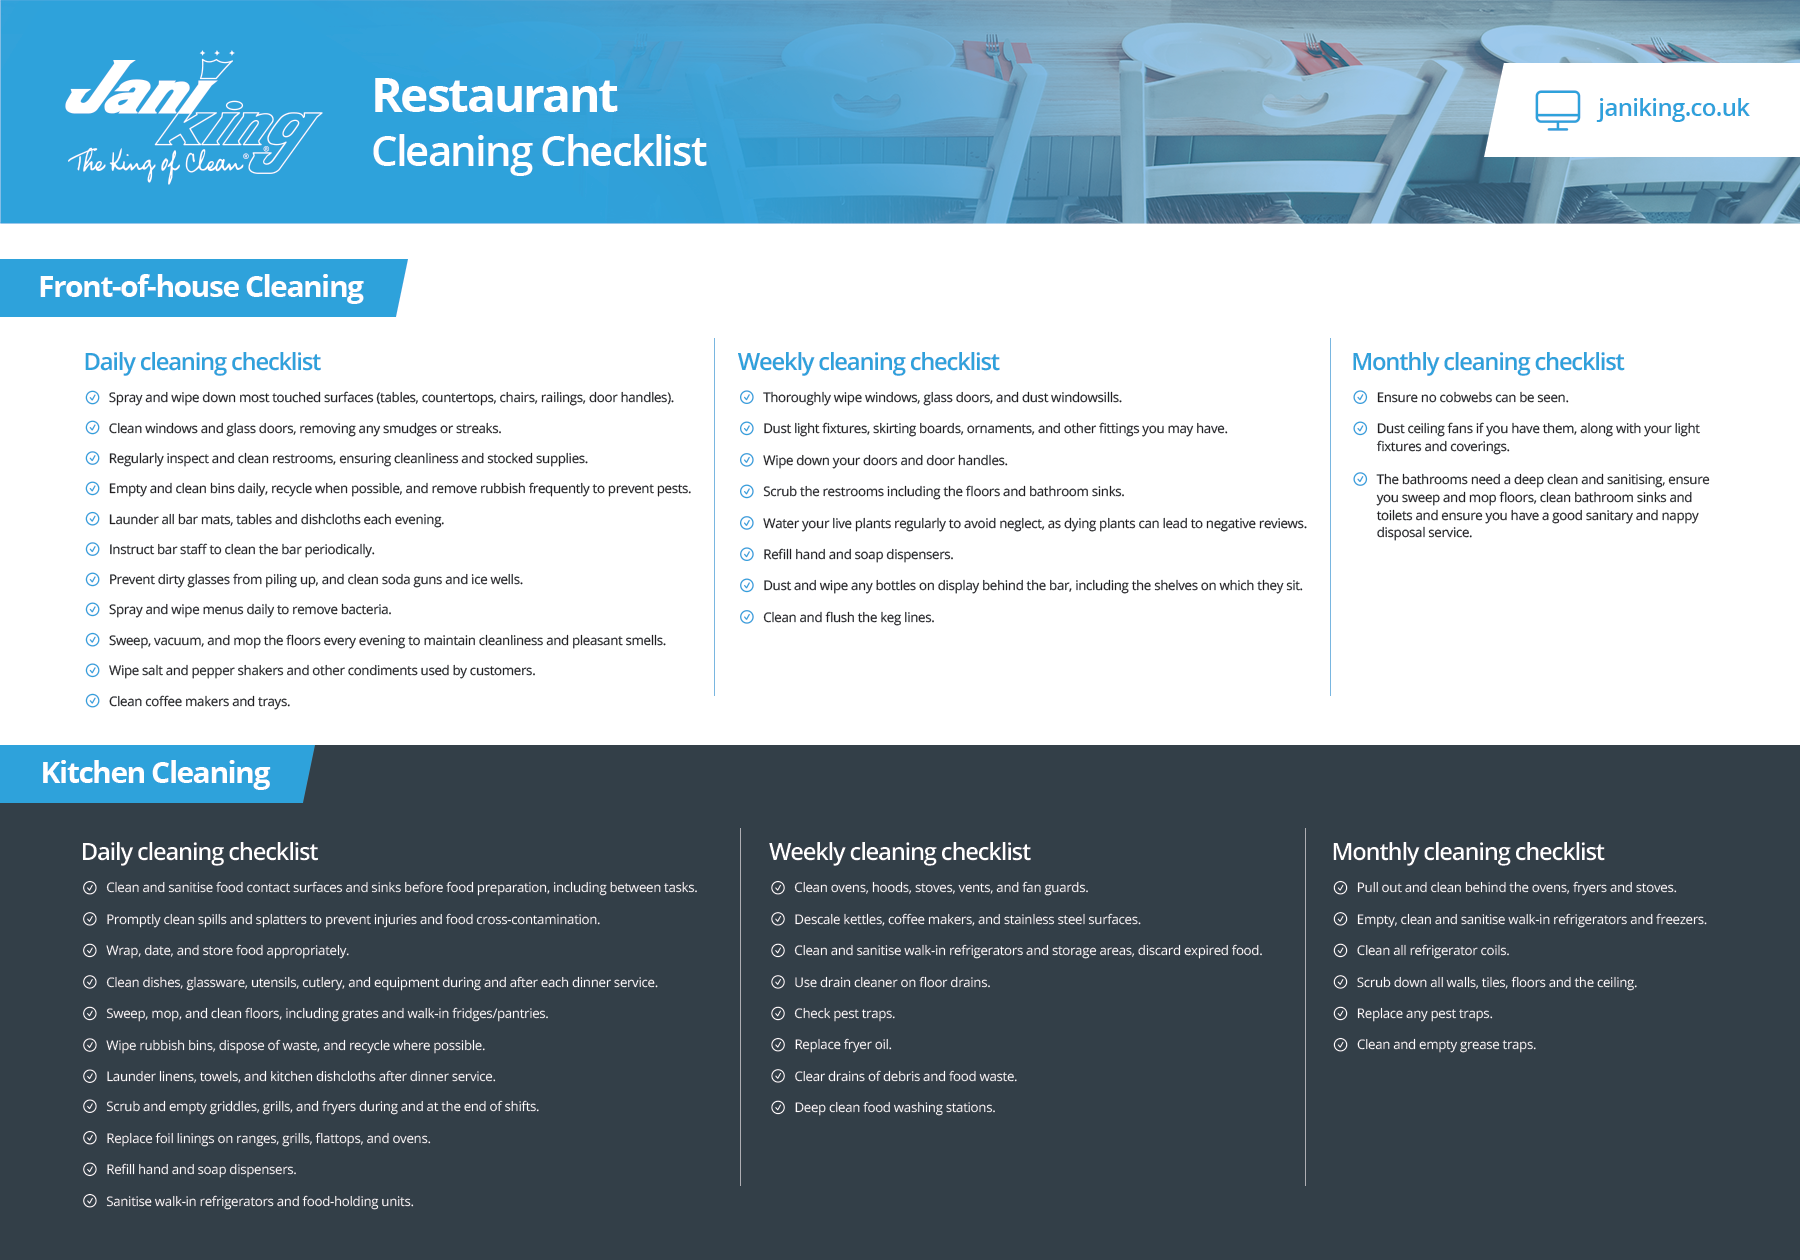 Restaurant Checklist